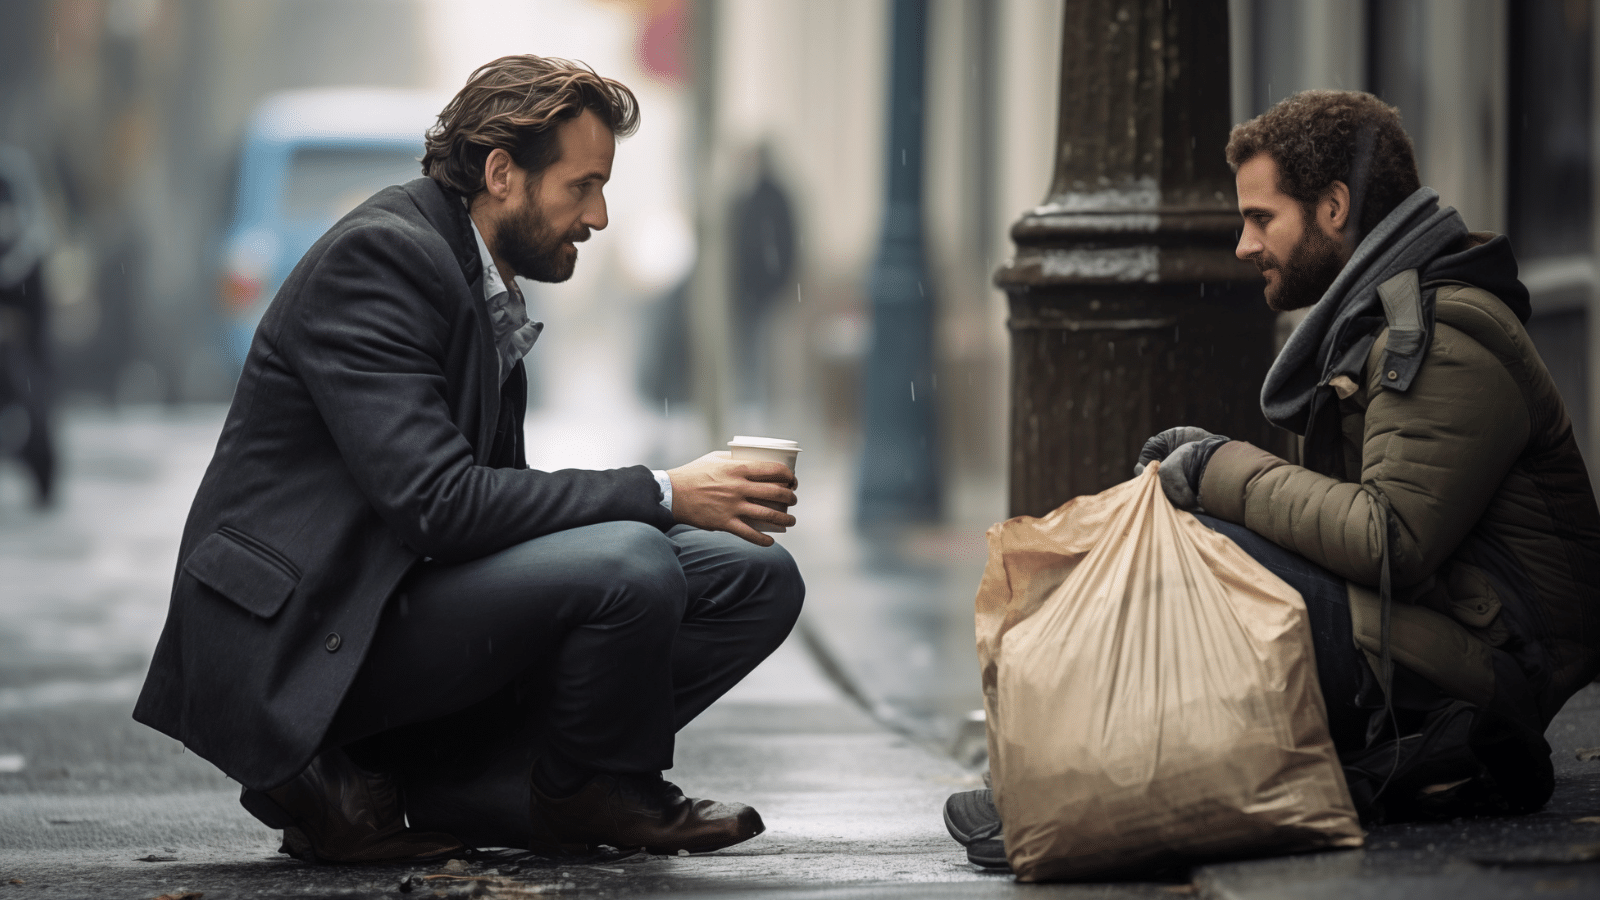 Business Man Caring about Homeless beggar man